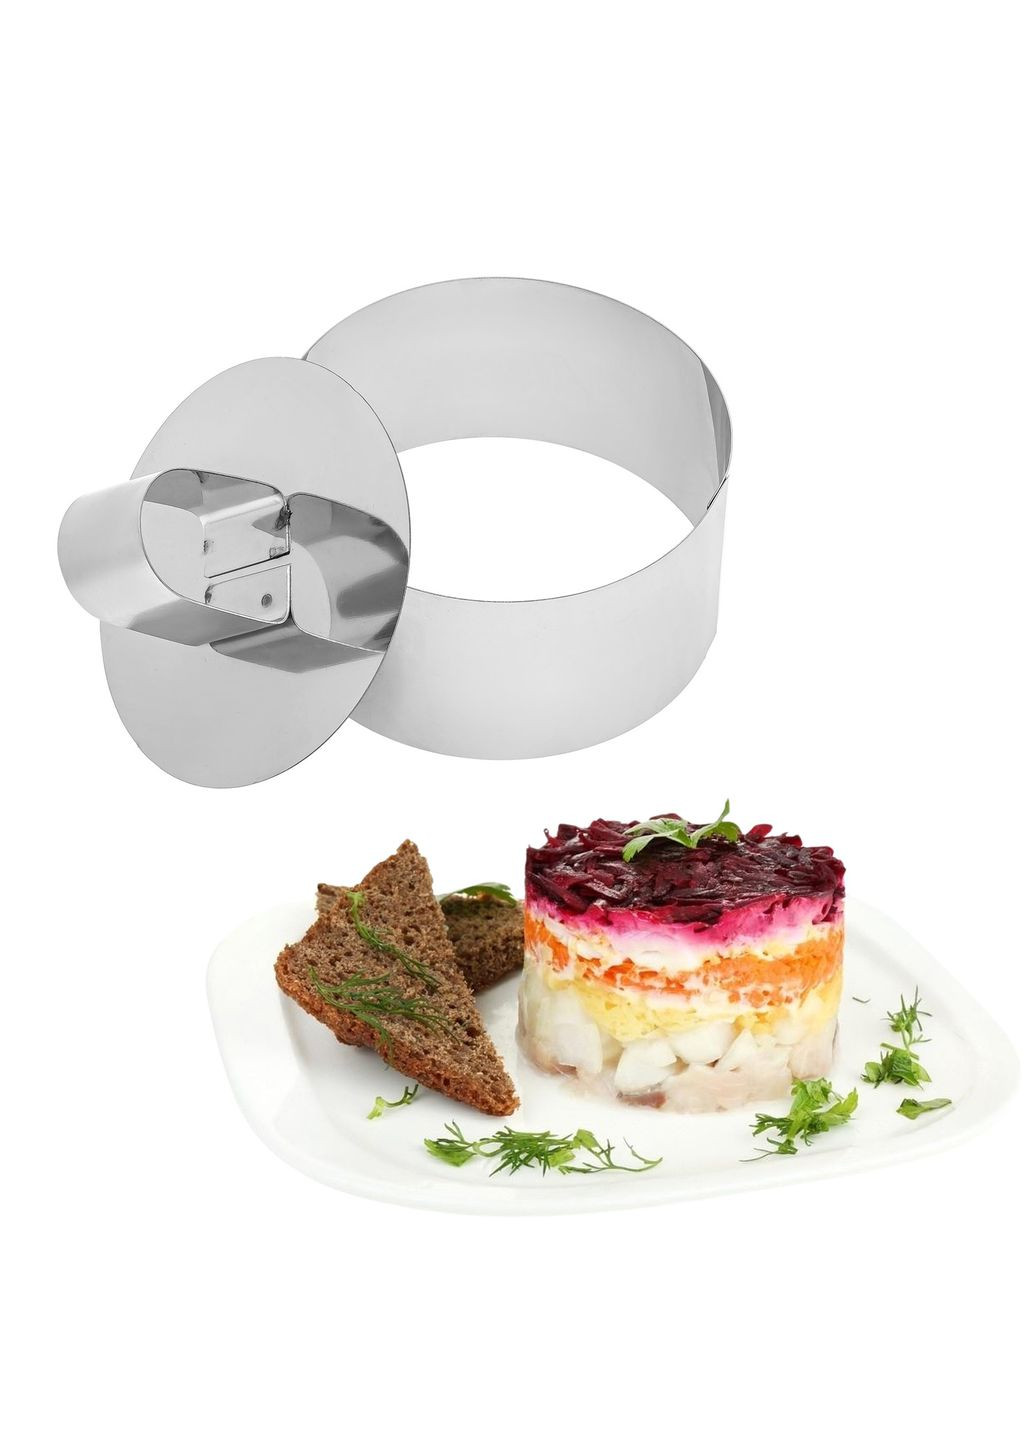 Кругла форма з виштовхувачем для викладки/вирубки салатів та гарніру з нержавіючої сталі Ø 8 H 4 см Master Class (292550042)